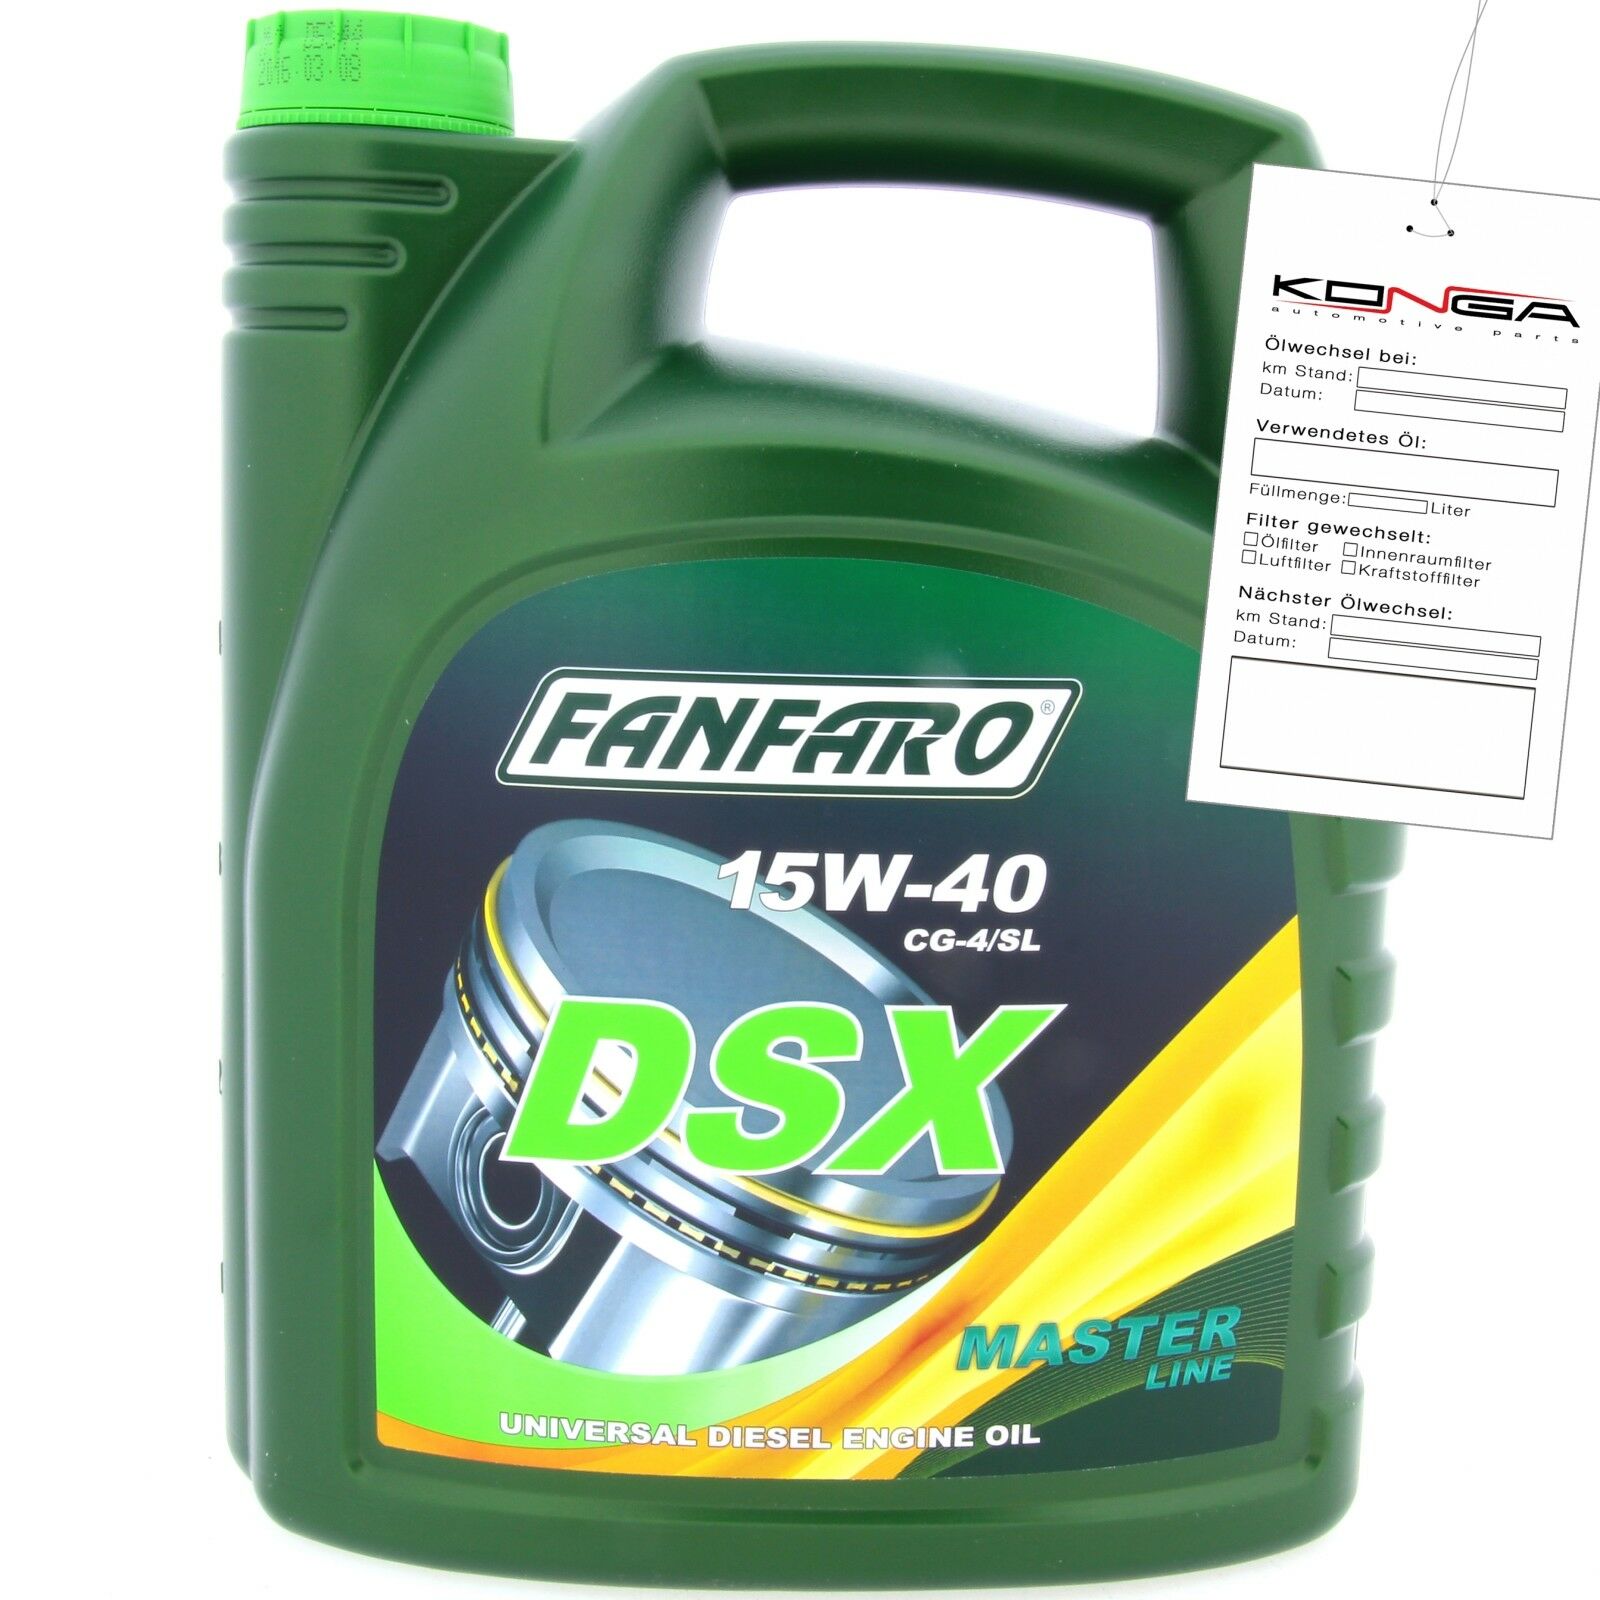 5 Liter FANFARO DSX 15W-40 CH-4/SL Motoröl E3 B3 A3 VW 505.00 501.00 MB 229.1